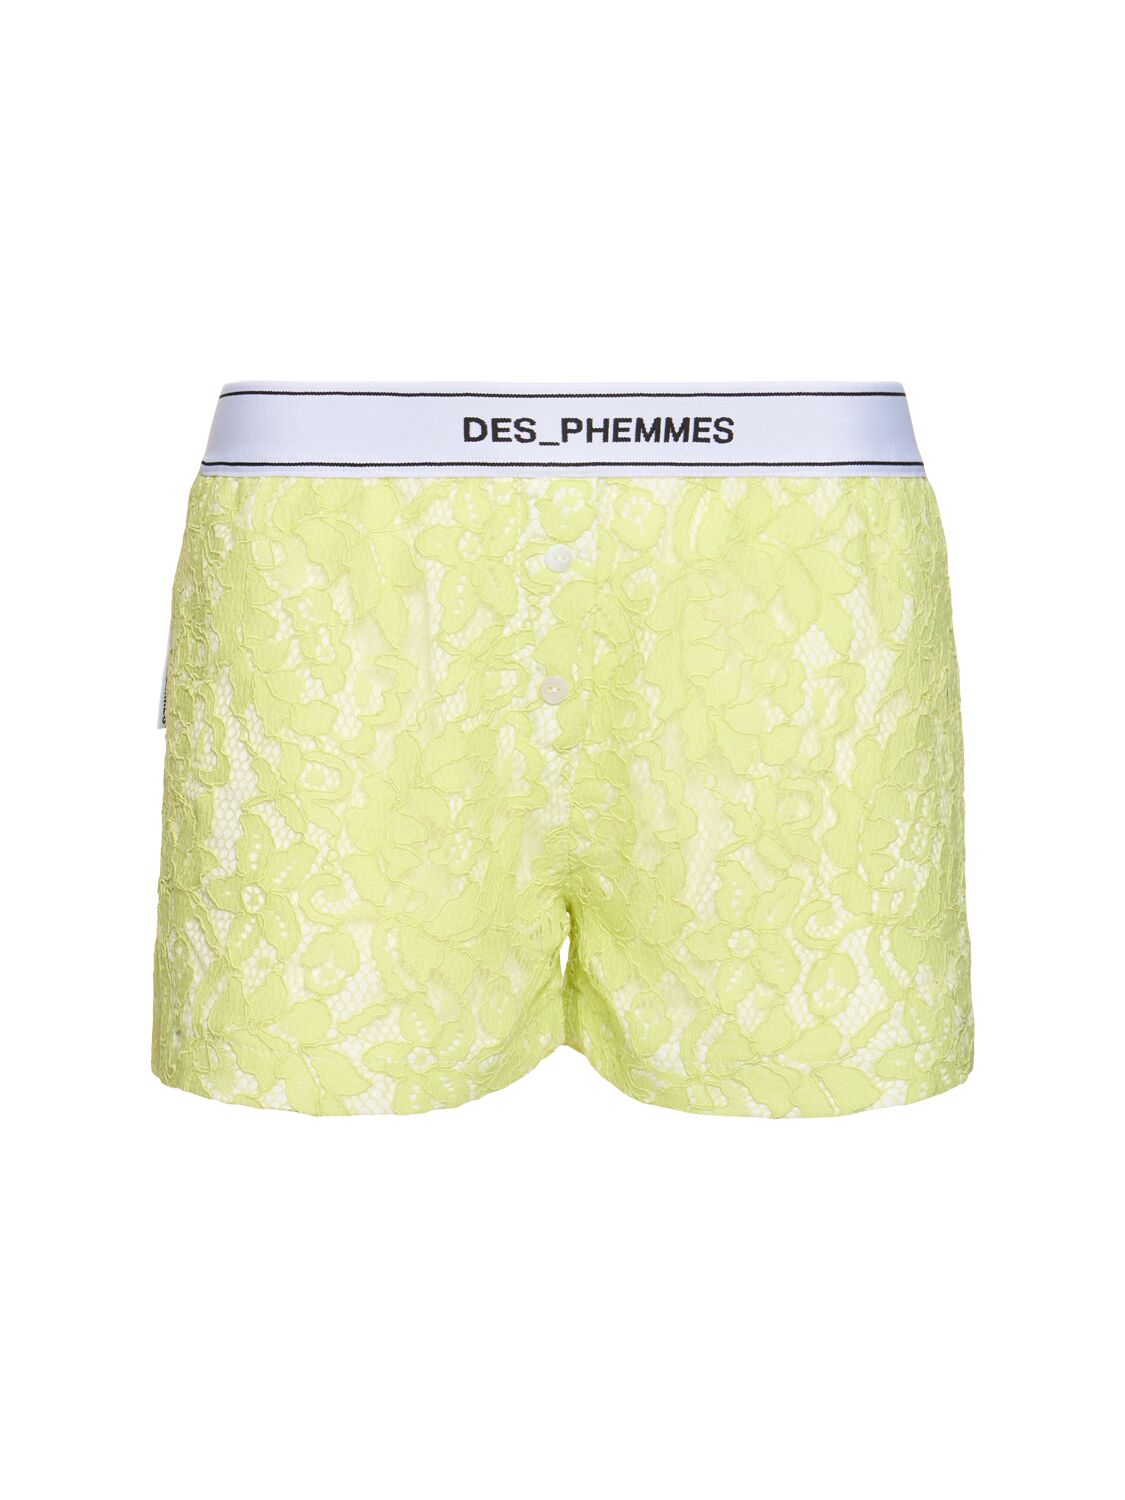 DES PHEMMES Macramé Lace Shorts